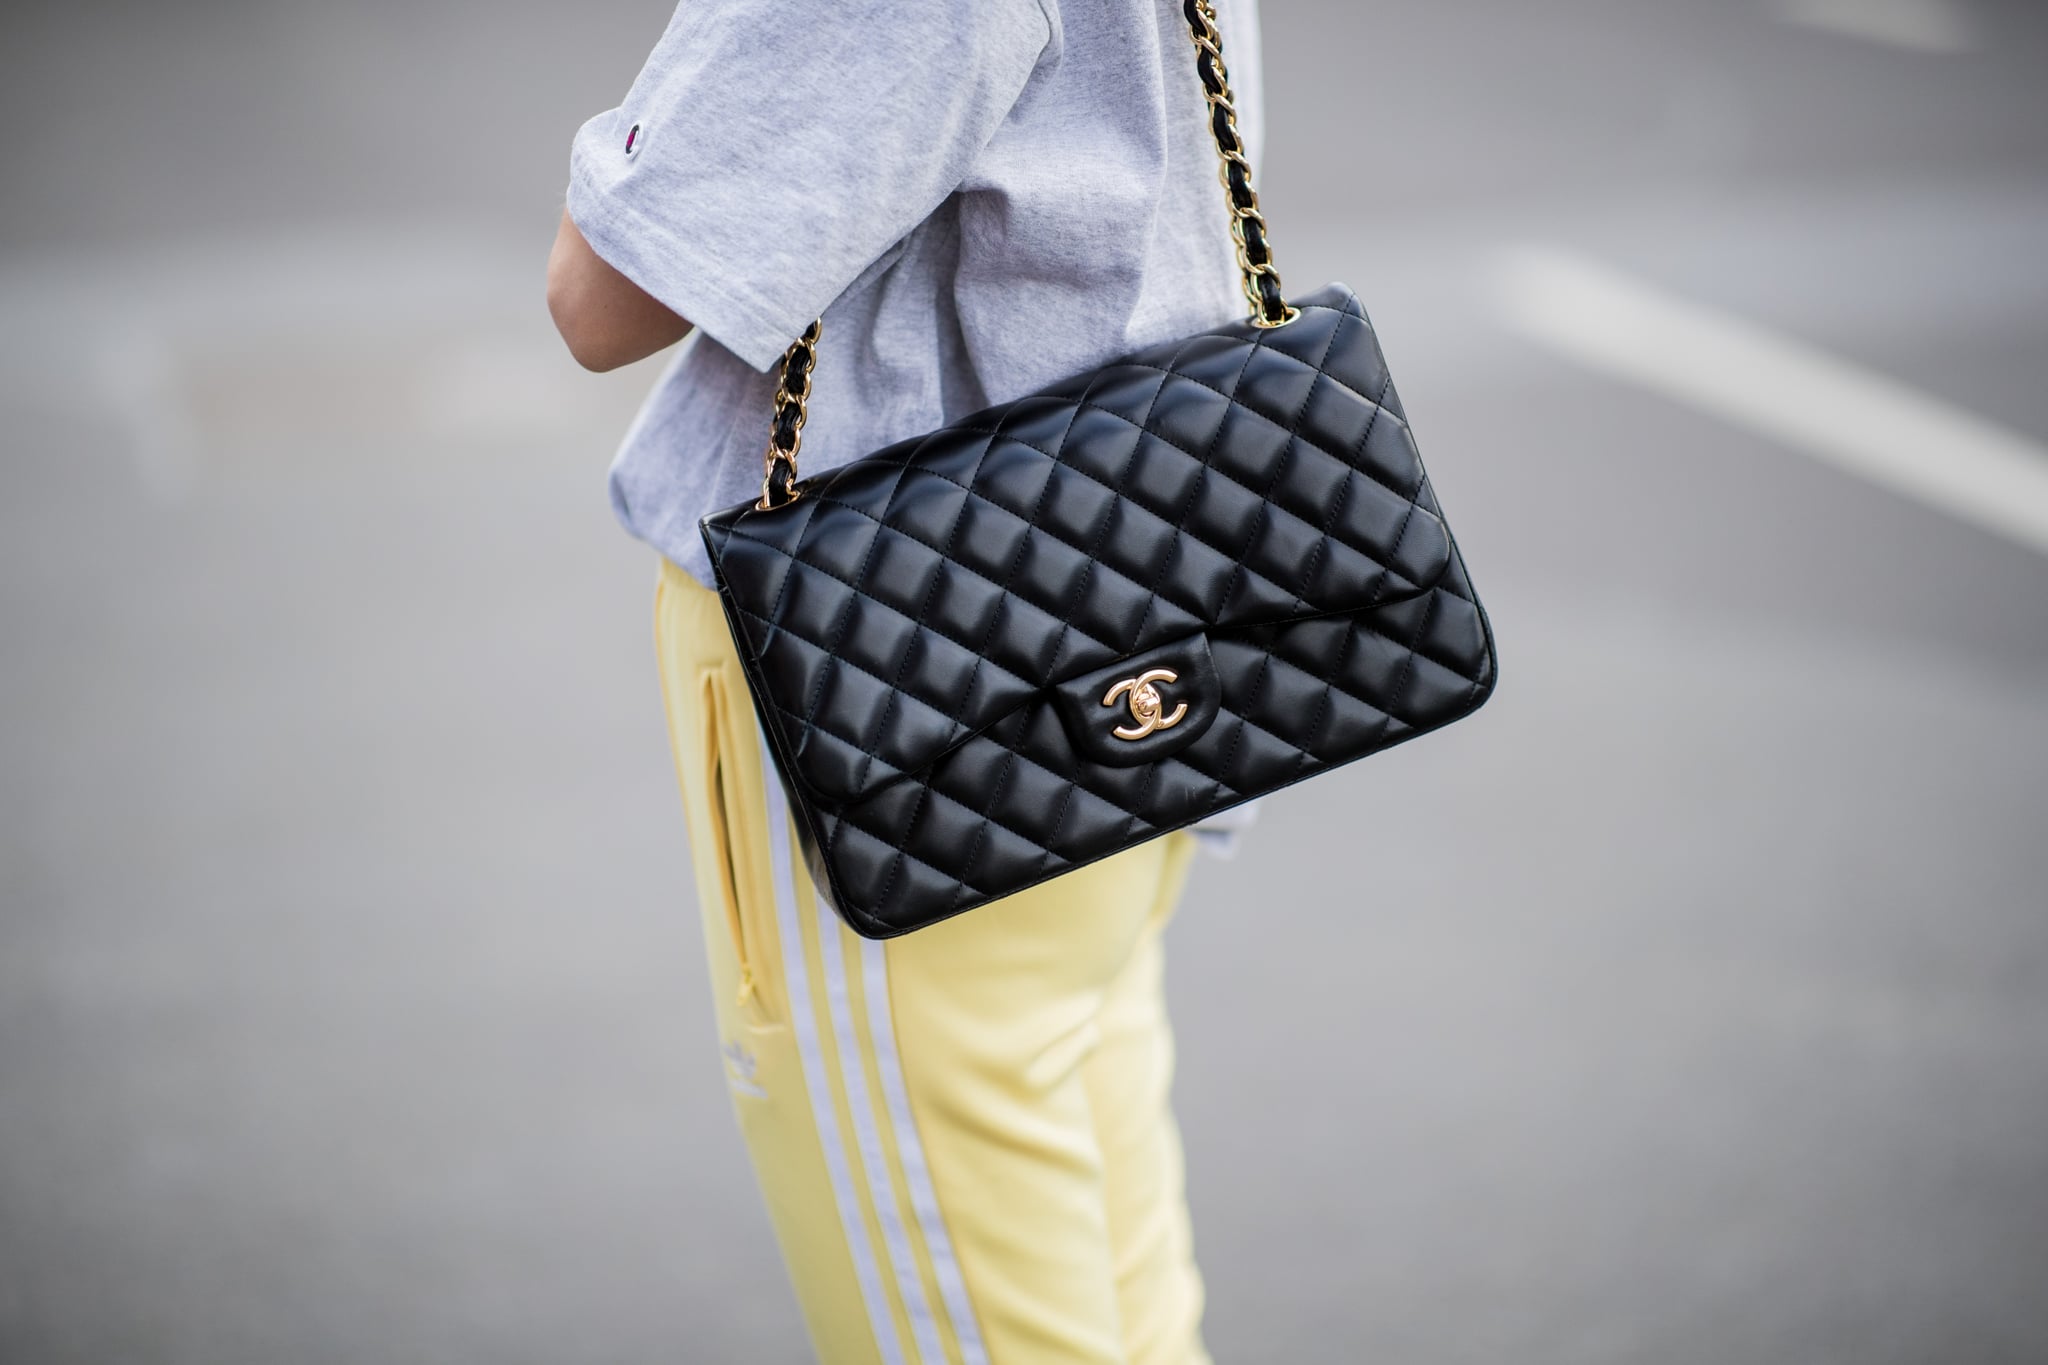 Chanel pone una curiosa restricción para la compra de sus carteras de lujo